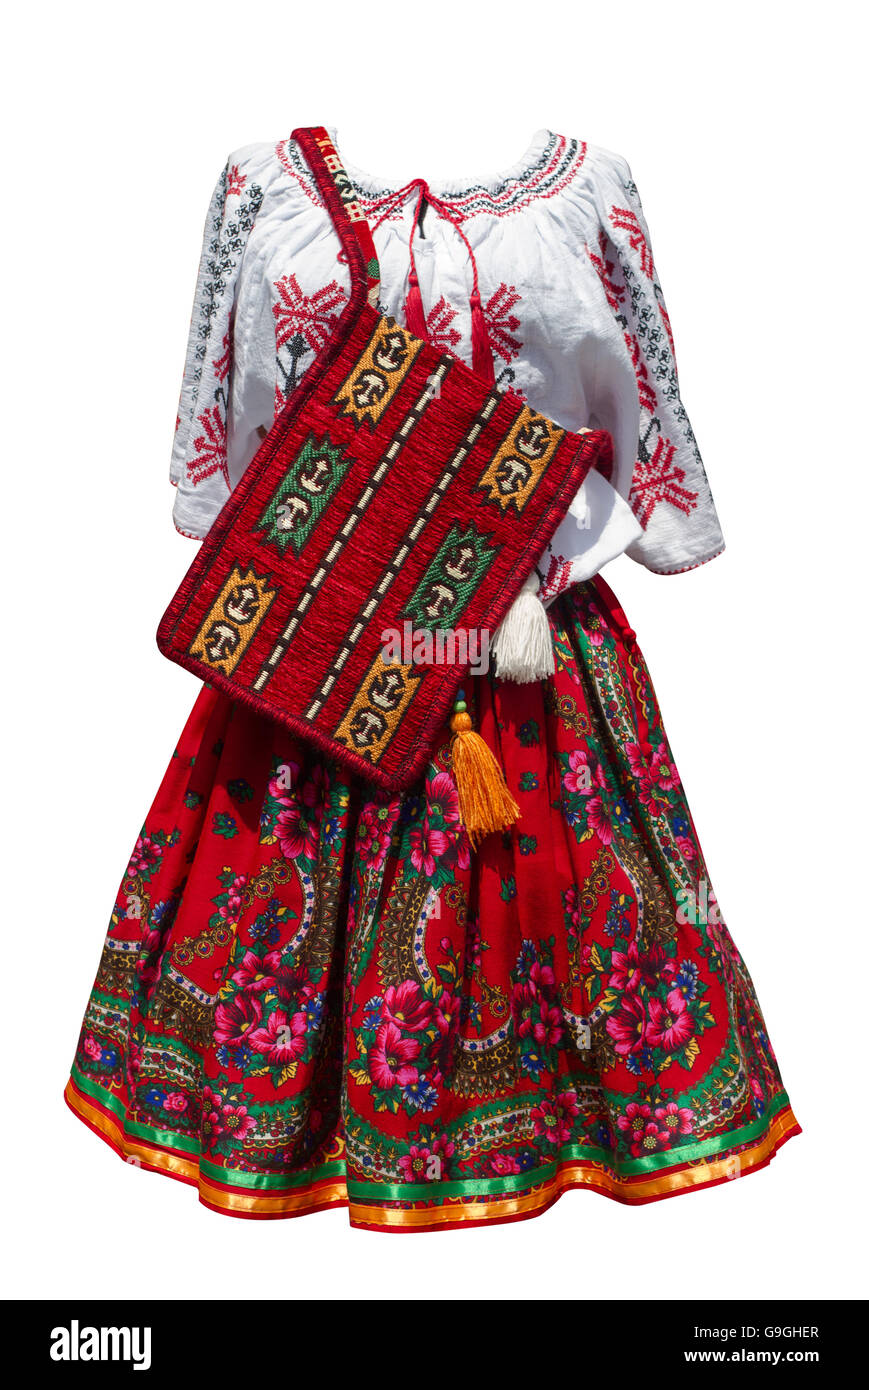 Robe traditionnelle roumaine Banque d'images détourées - Alamy